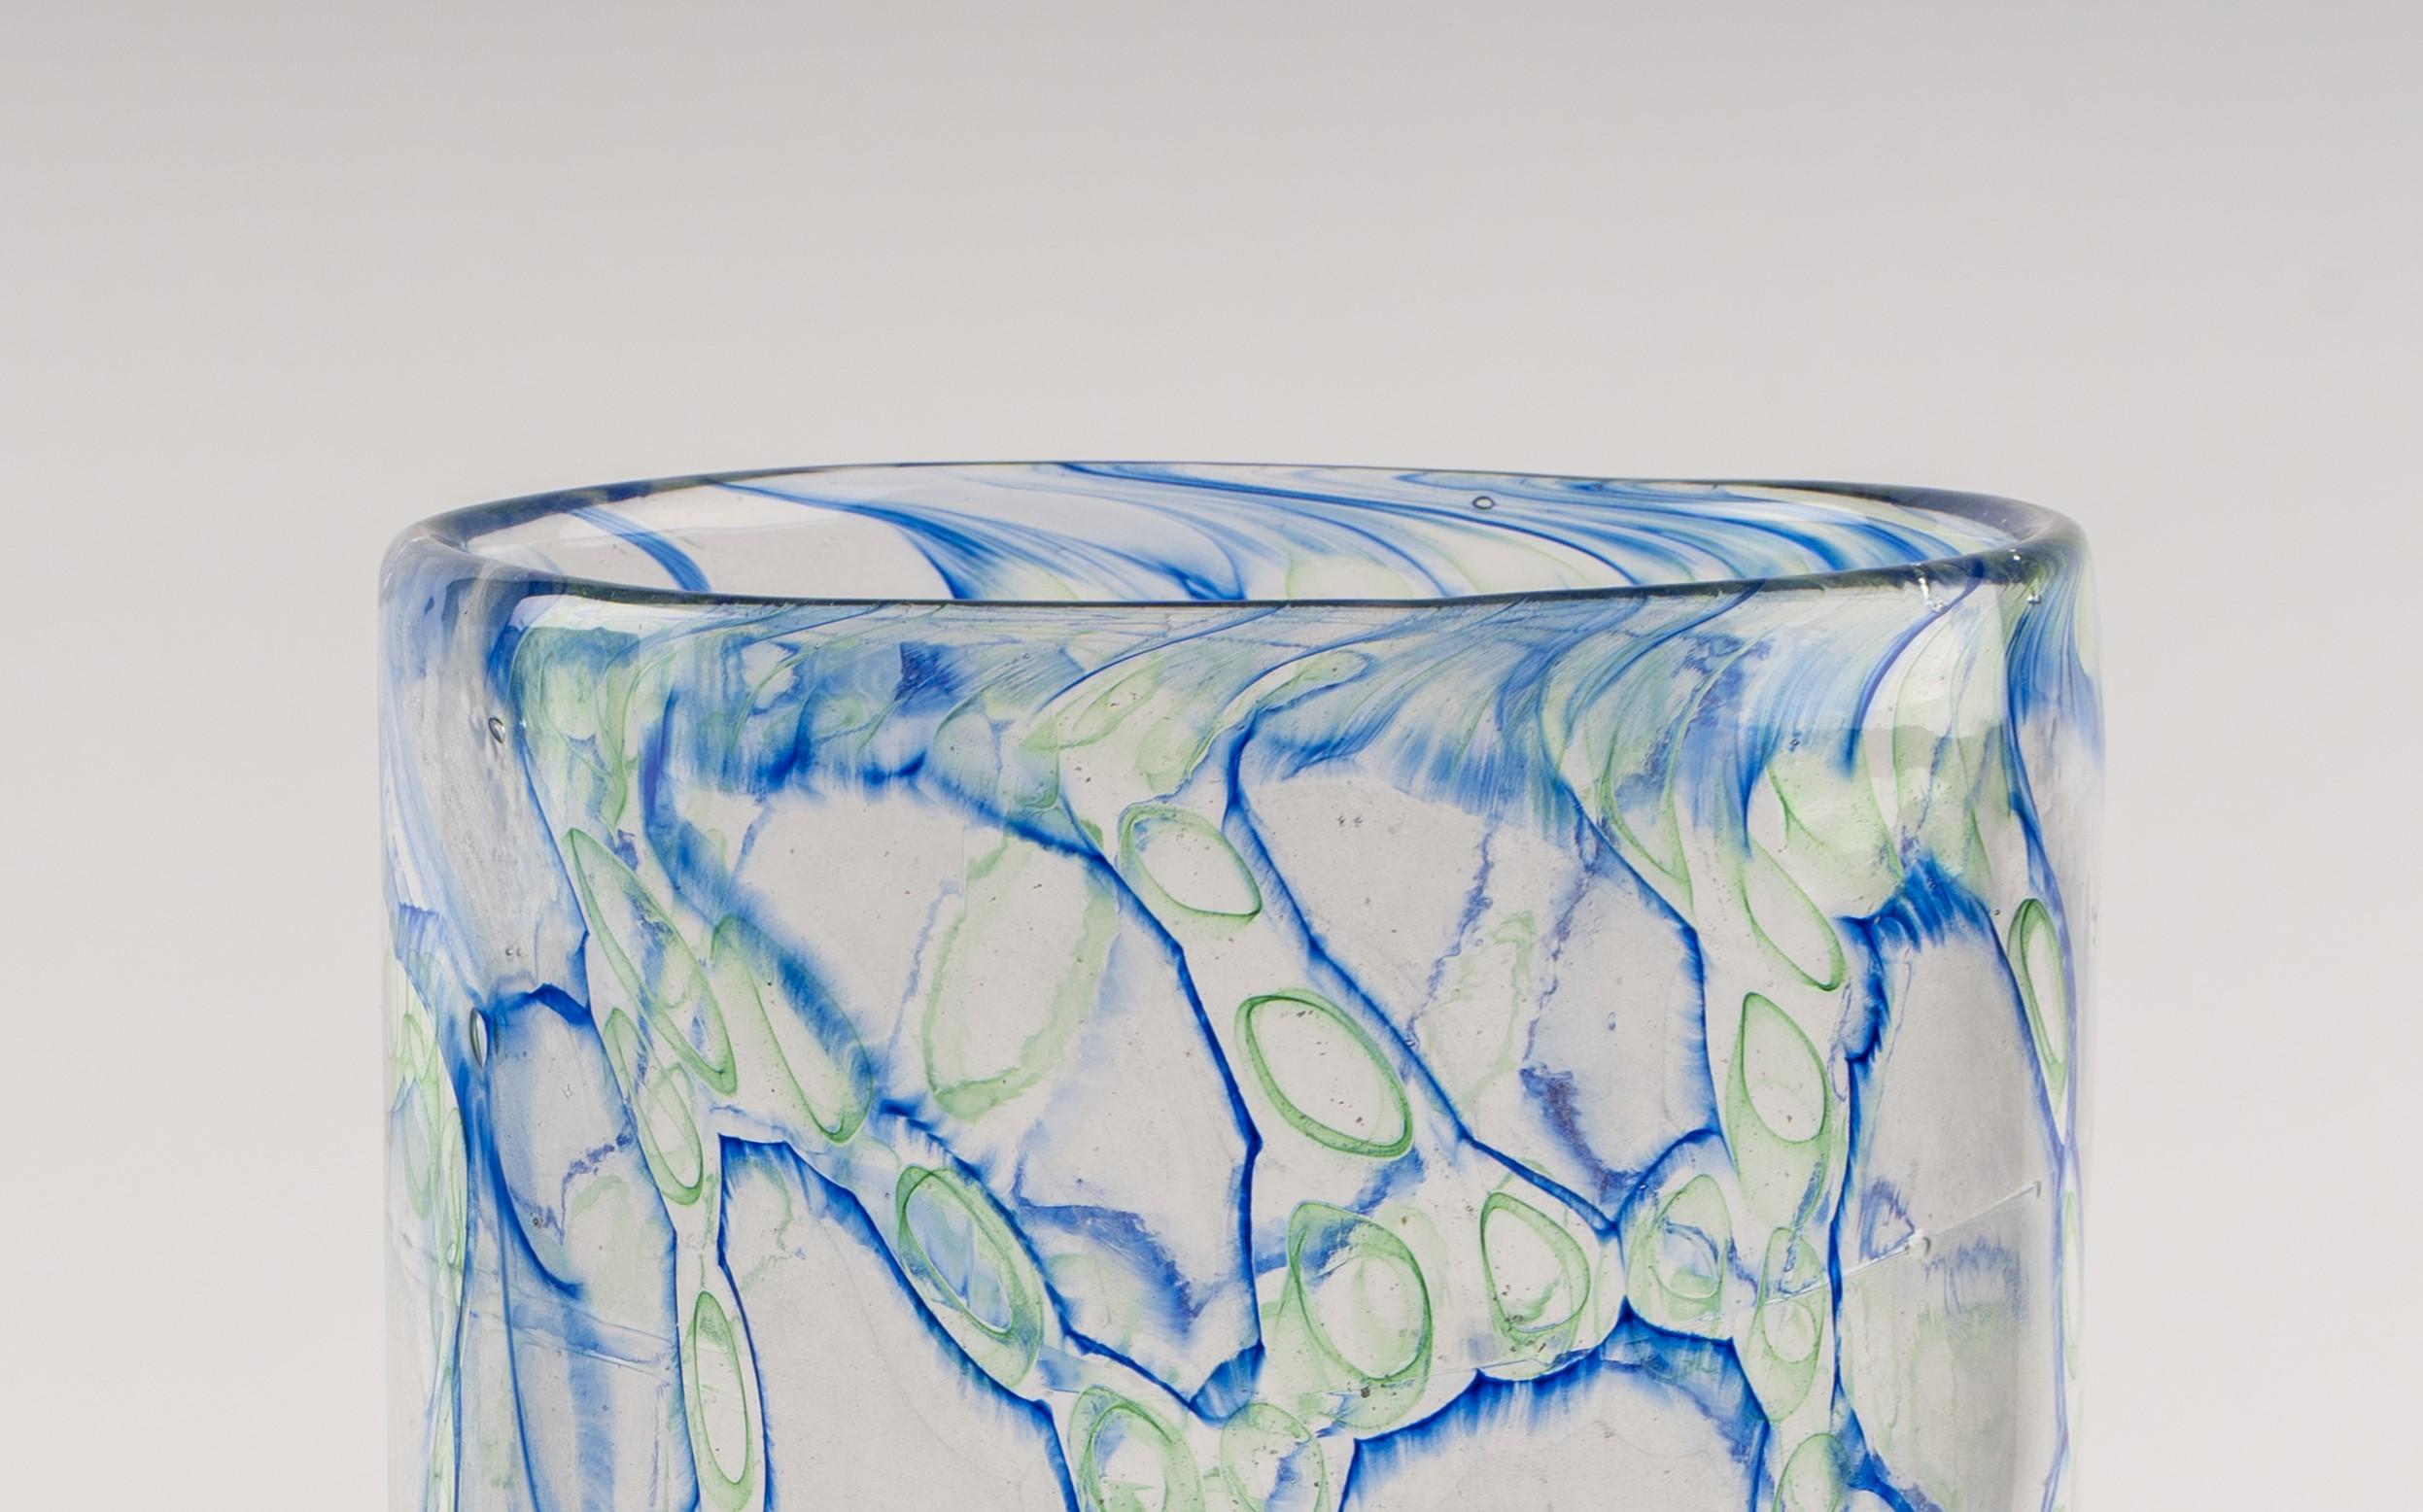 Jeremiah Jacobs, ein meisterhafter Glasbläser, hat ein exquisites mundgeblasenes Glasstück geschaffen, das die faszinierende Murrini-Technik beinhaltet. Dieses atemberaubende Kunstwerk zeigt ein korallenähnliches Muster aus blauen und grünen Linien